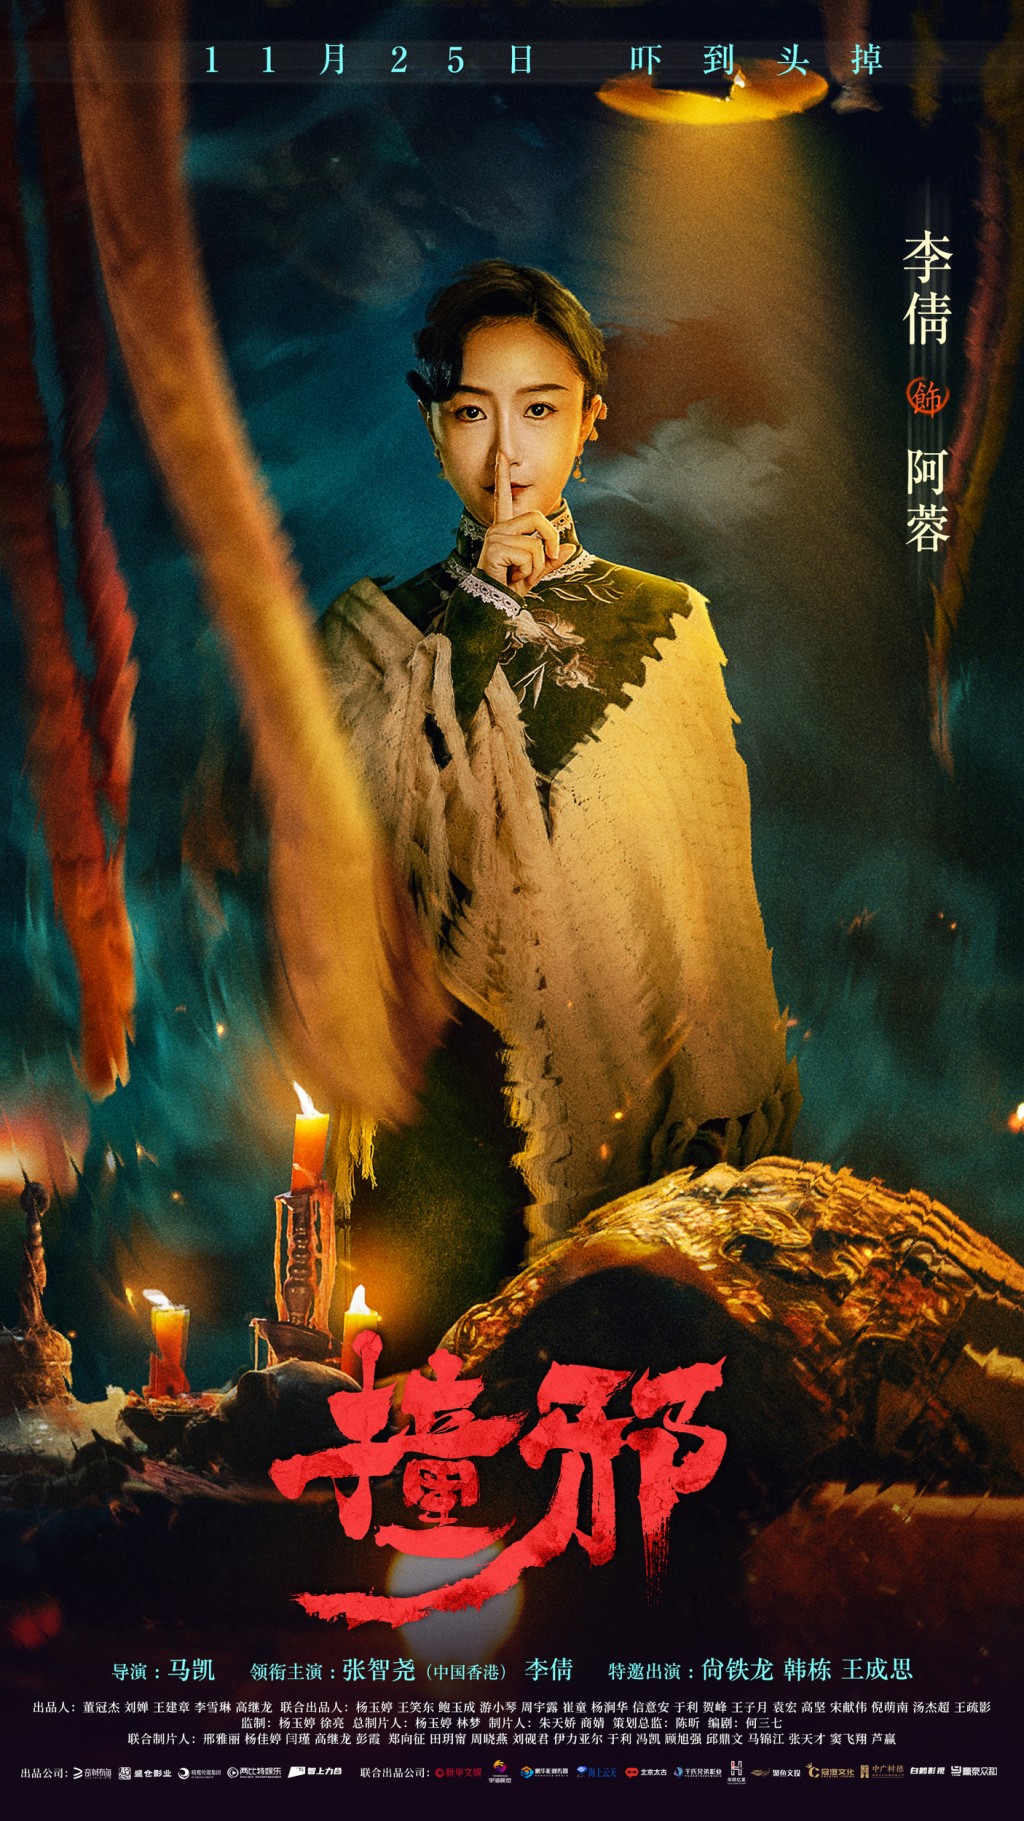 李倩主演的恐怖電影《撞邪》已於11月25日上線。